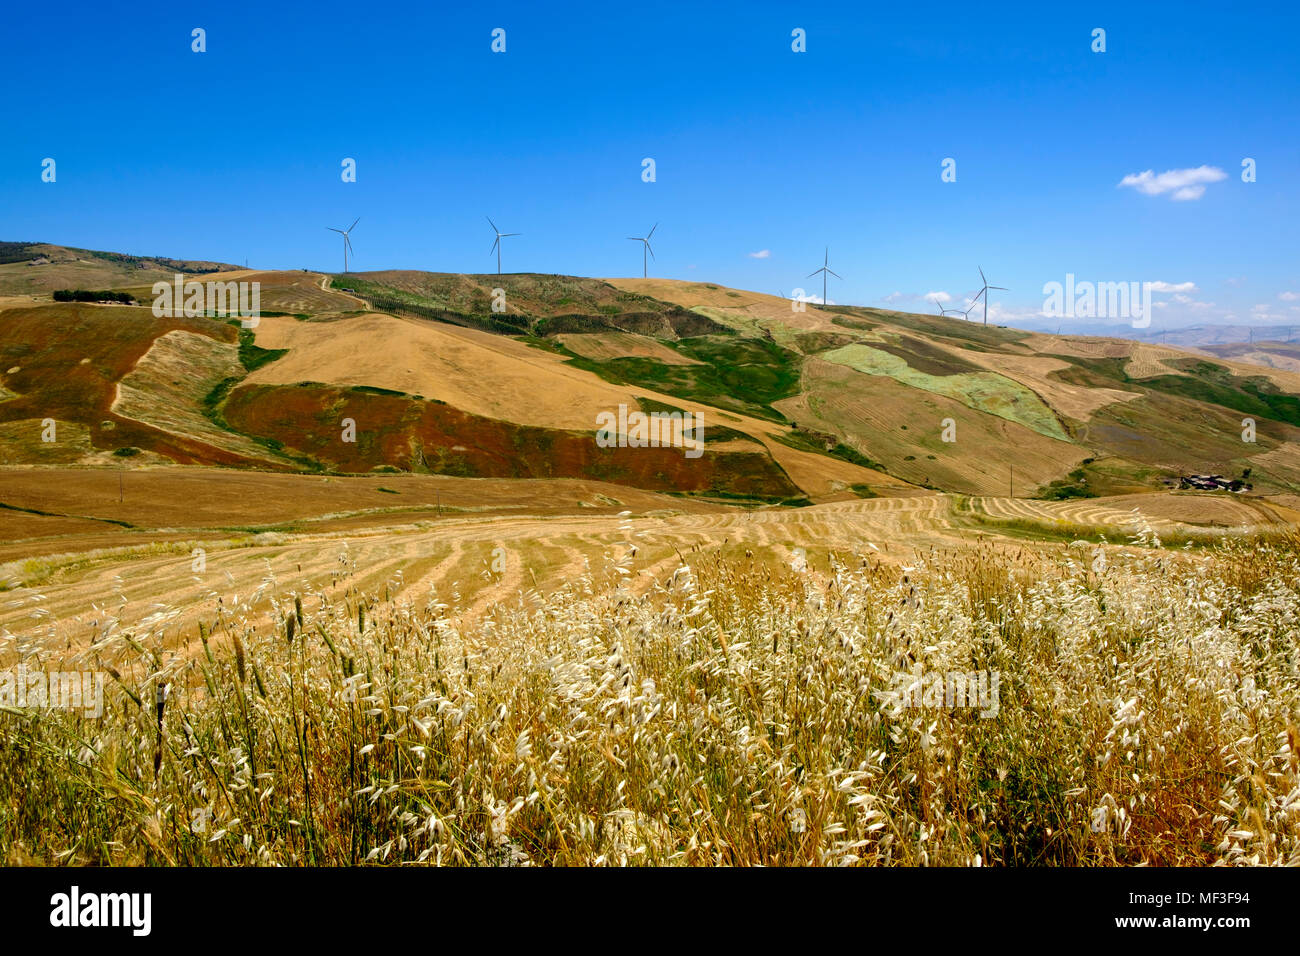 Un Windräder Getreidefelder und der SS118, bei Corleone, Palermo, Sizilien Provinz, Italien Foto de stock